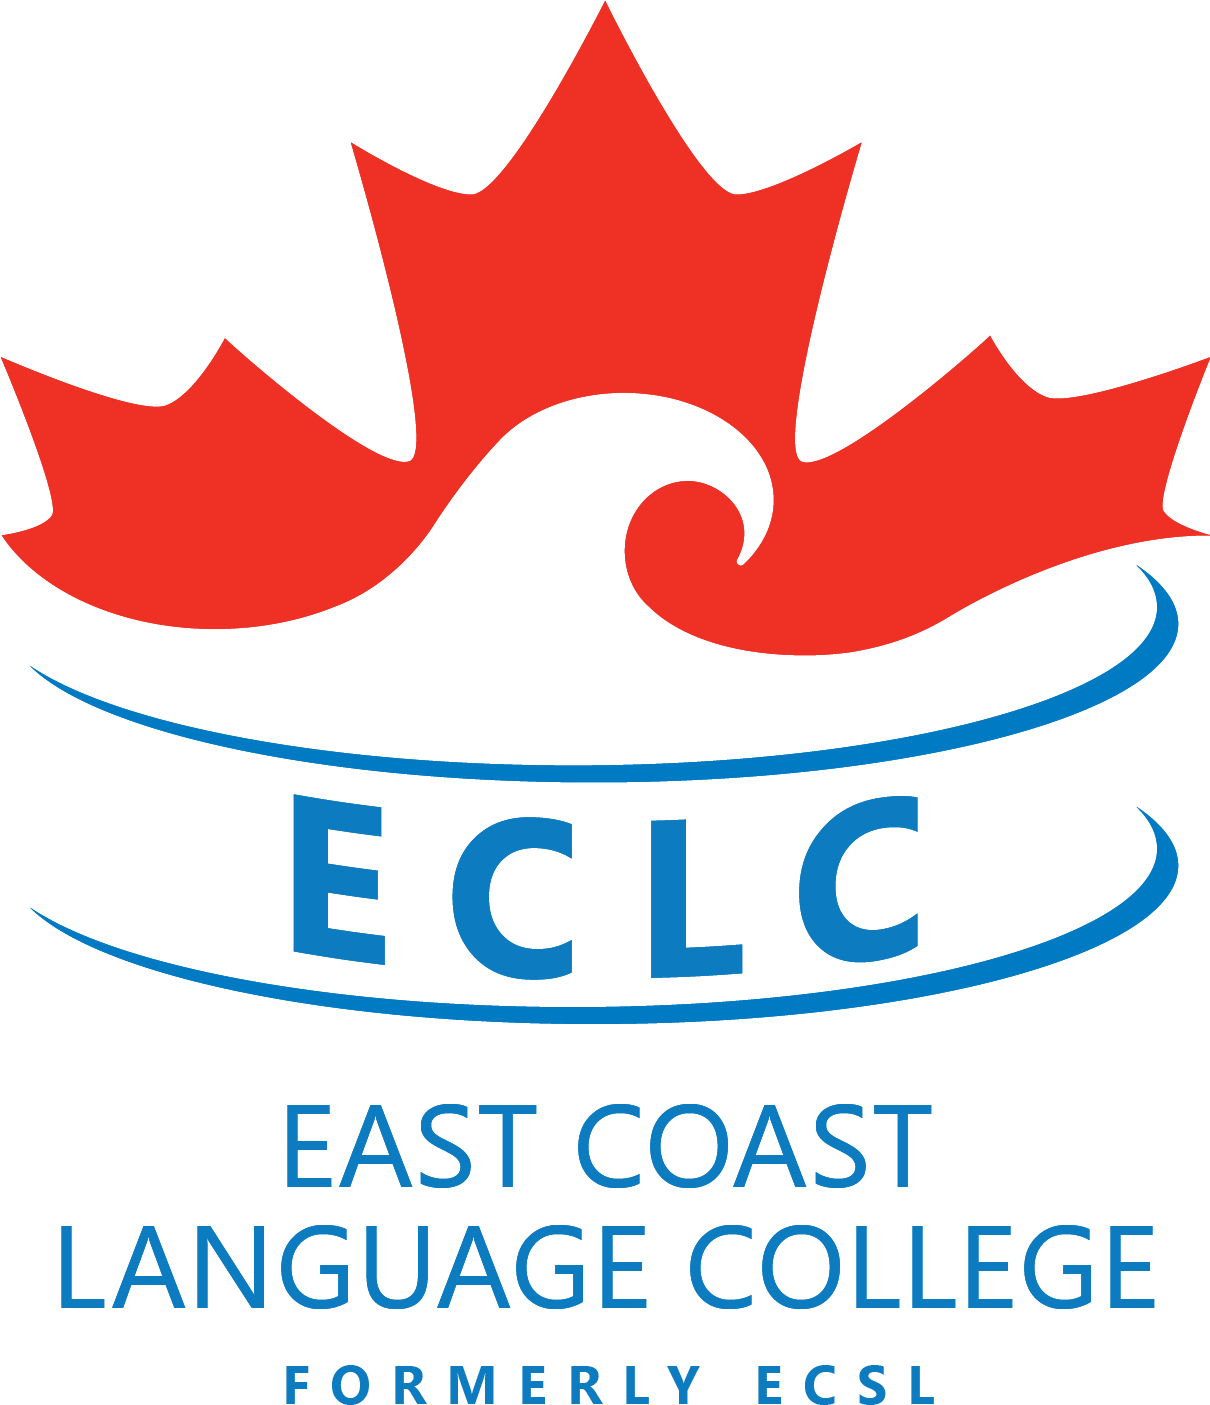 Description - East Coast Language College (1209x1420)